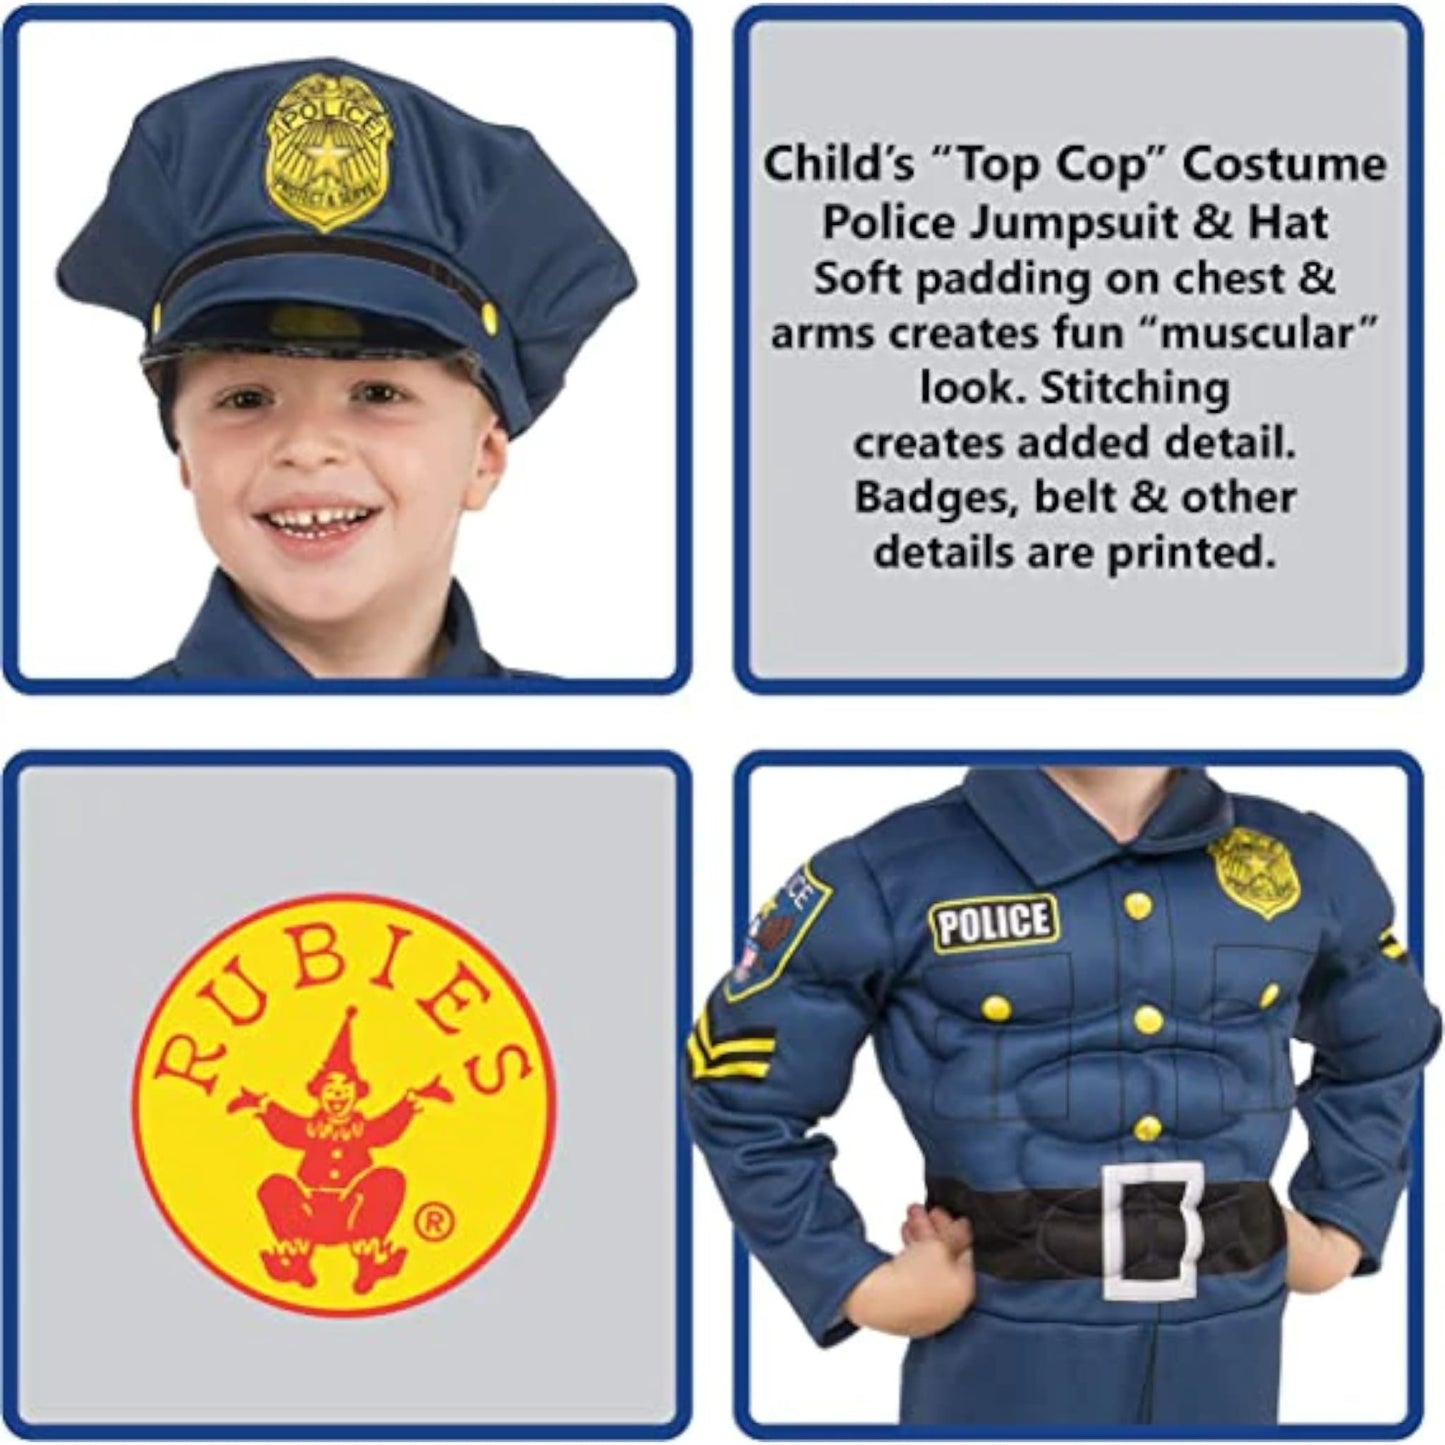 Costume da Super Poliziotto